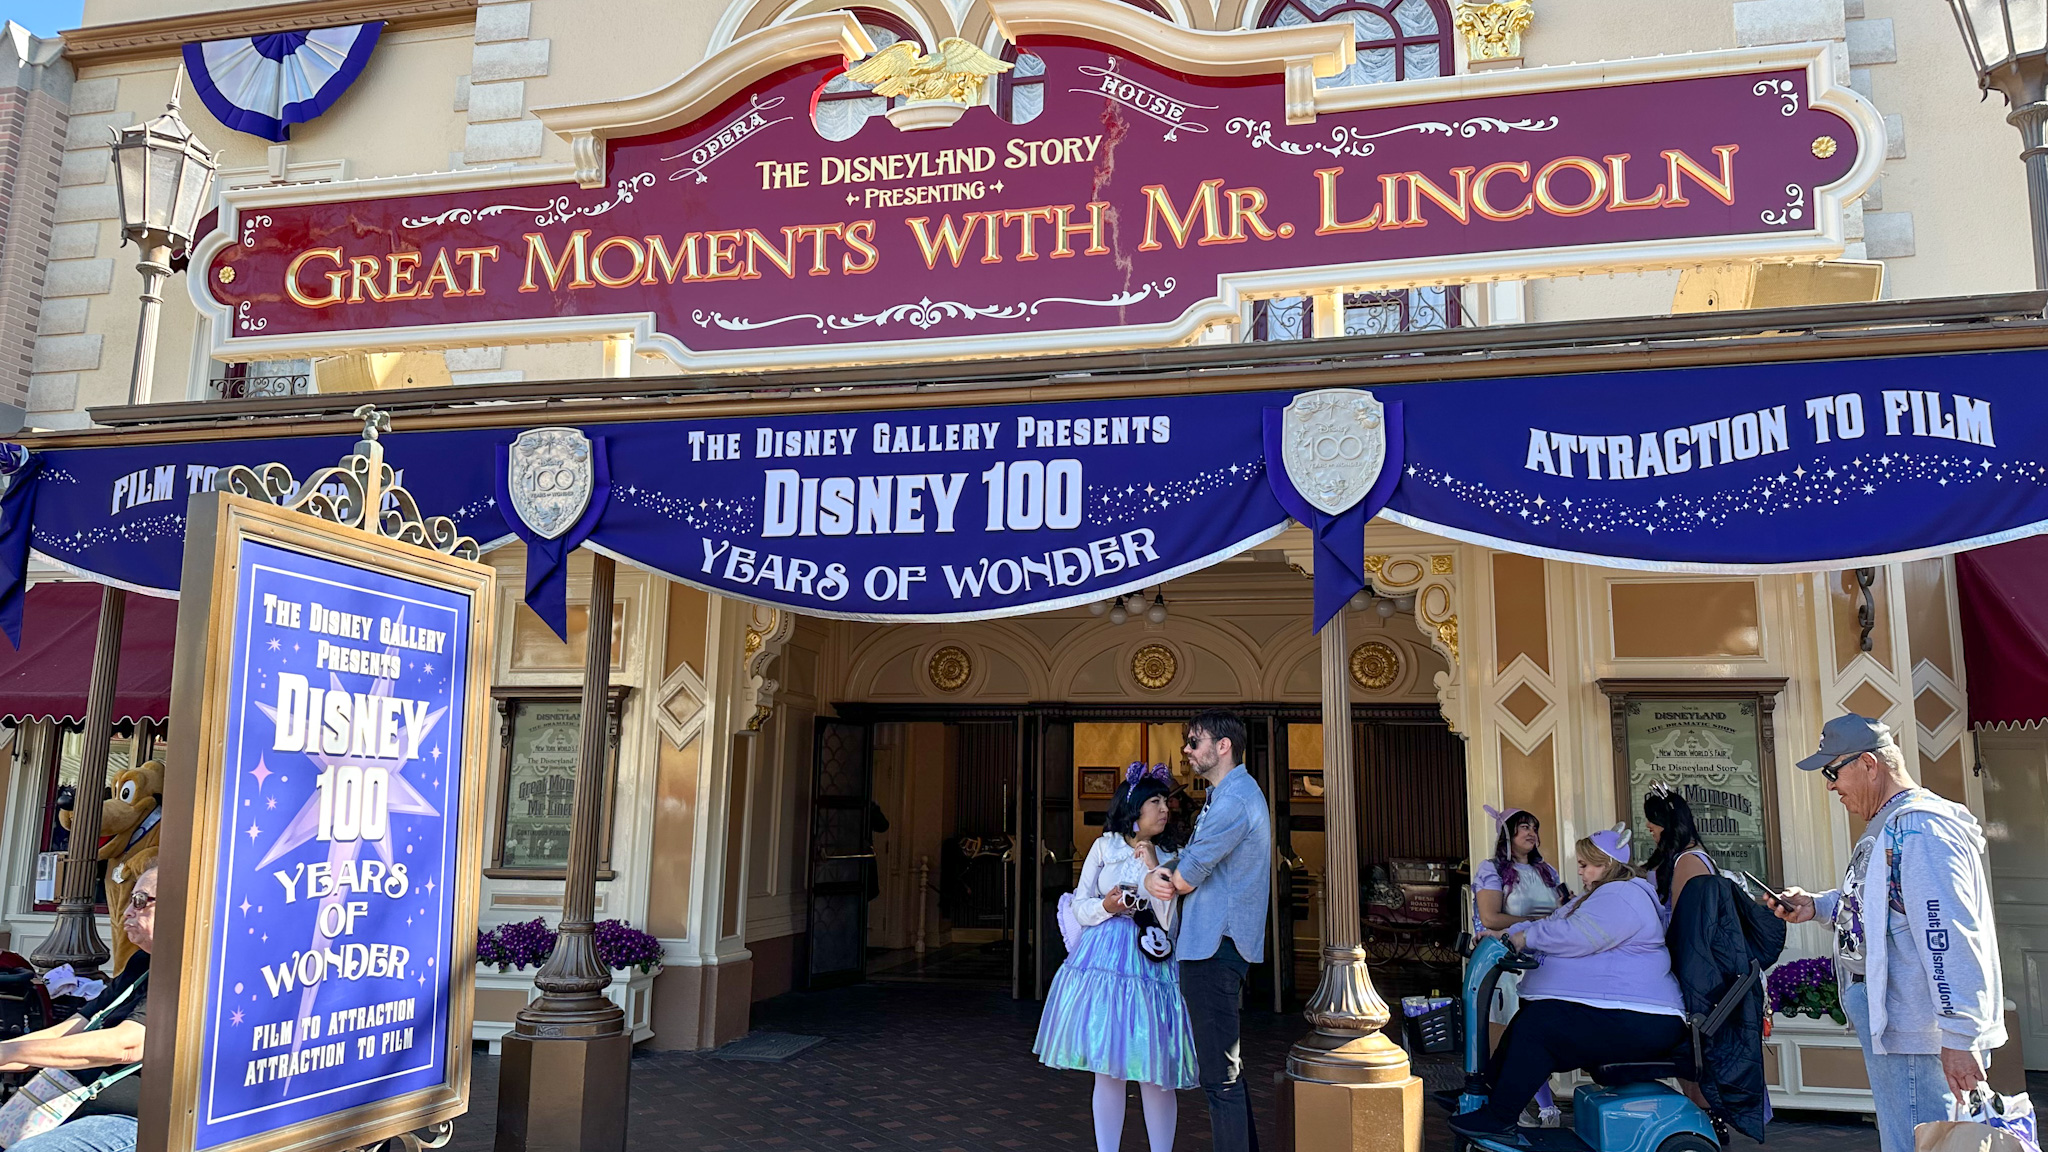 The Disney Gallery Presents: Disney 100 Years of Wonder at Disneyland